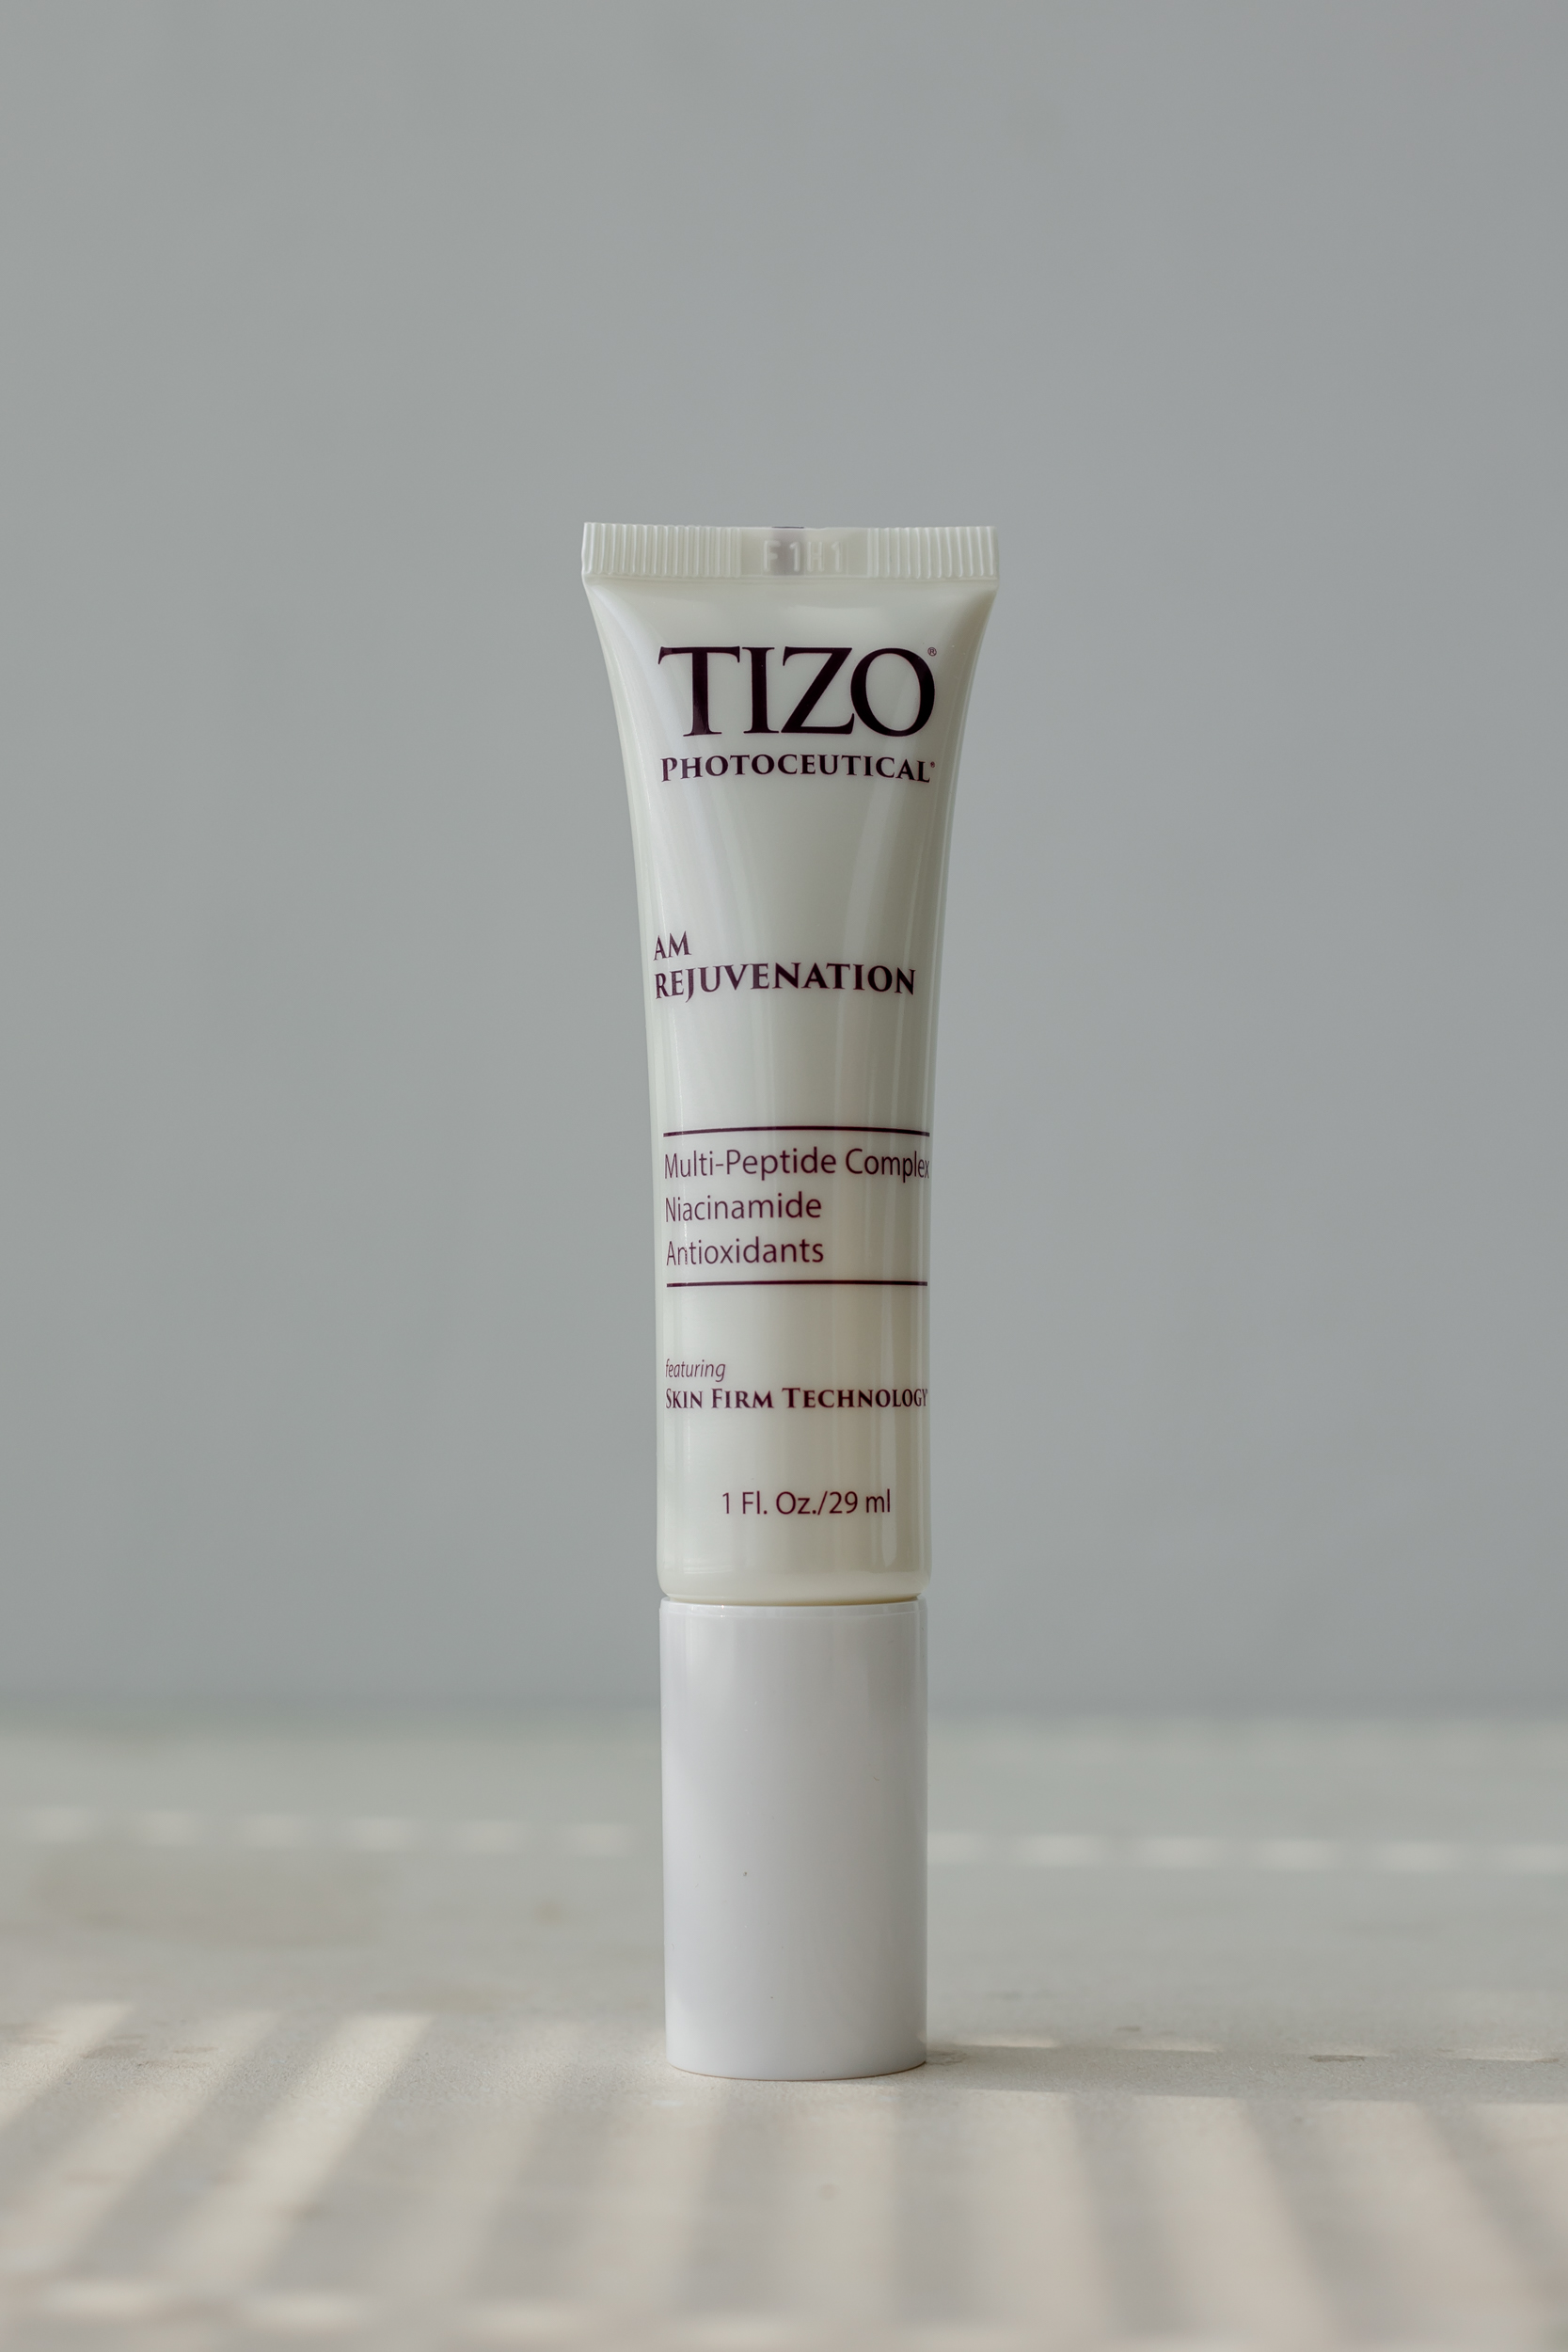 Дневная омолаживающая сыворотка TiZO Photoceutical AM Rejuvenation 29мл